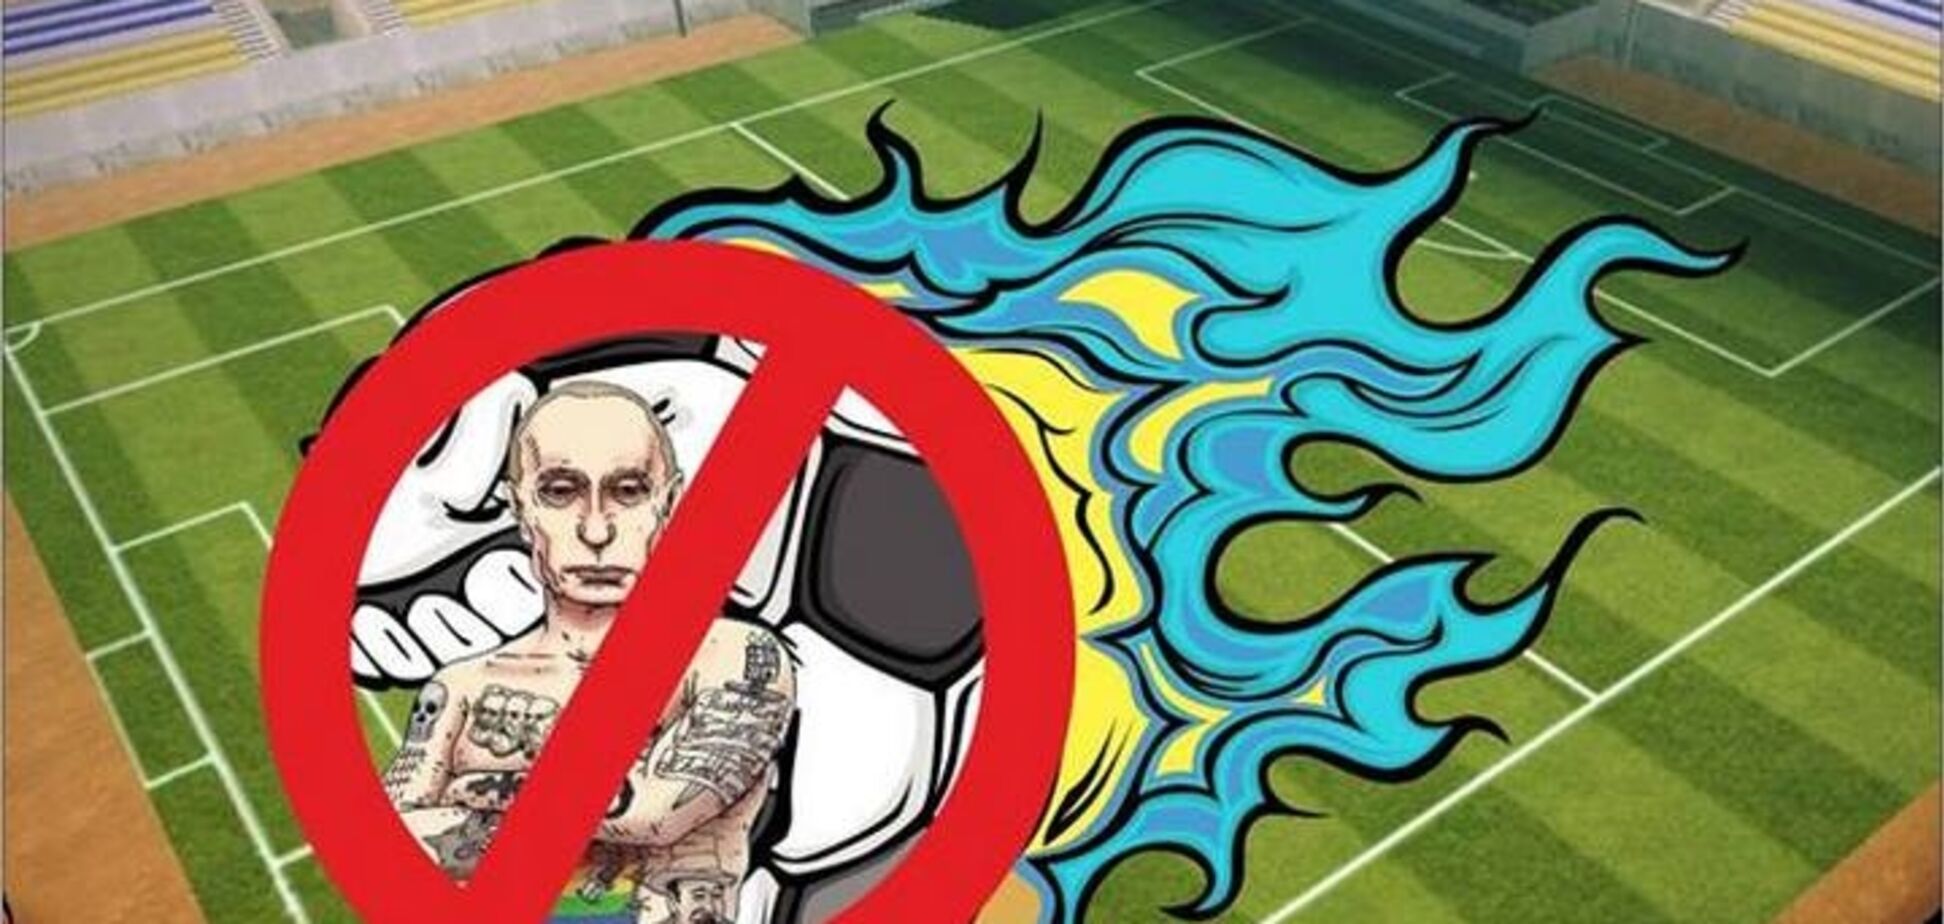 'Отфутболь диктатора!' В нескольких странах мира объявили бойкот ЧМ-2018 в России